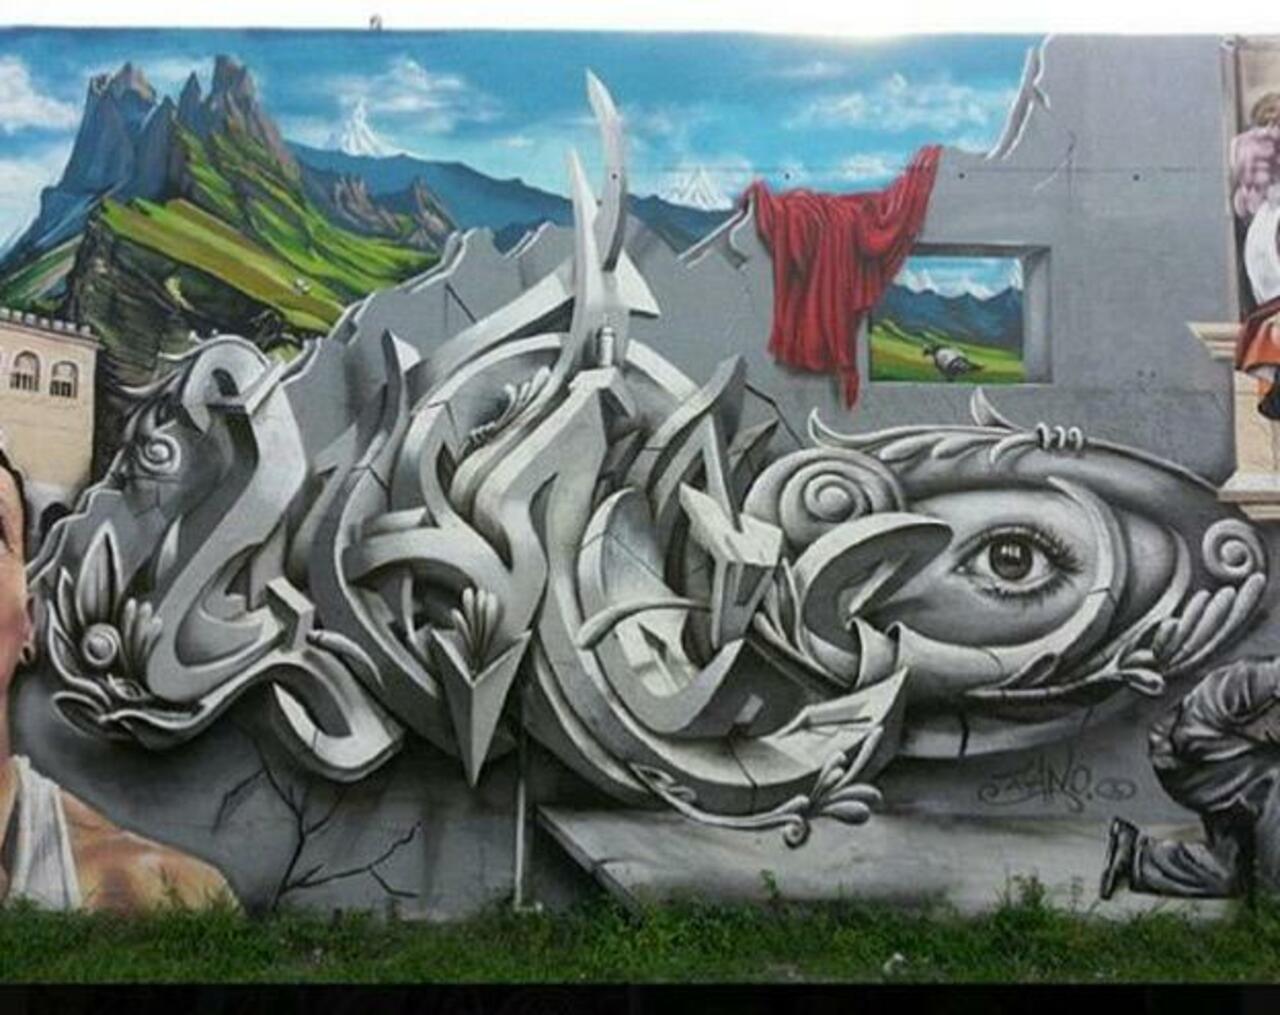 Street Art by Smog One

#art #mural #graffiti #streetart http://t.co/gKZ5V4LY5P